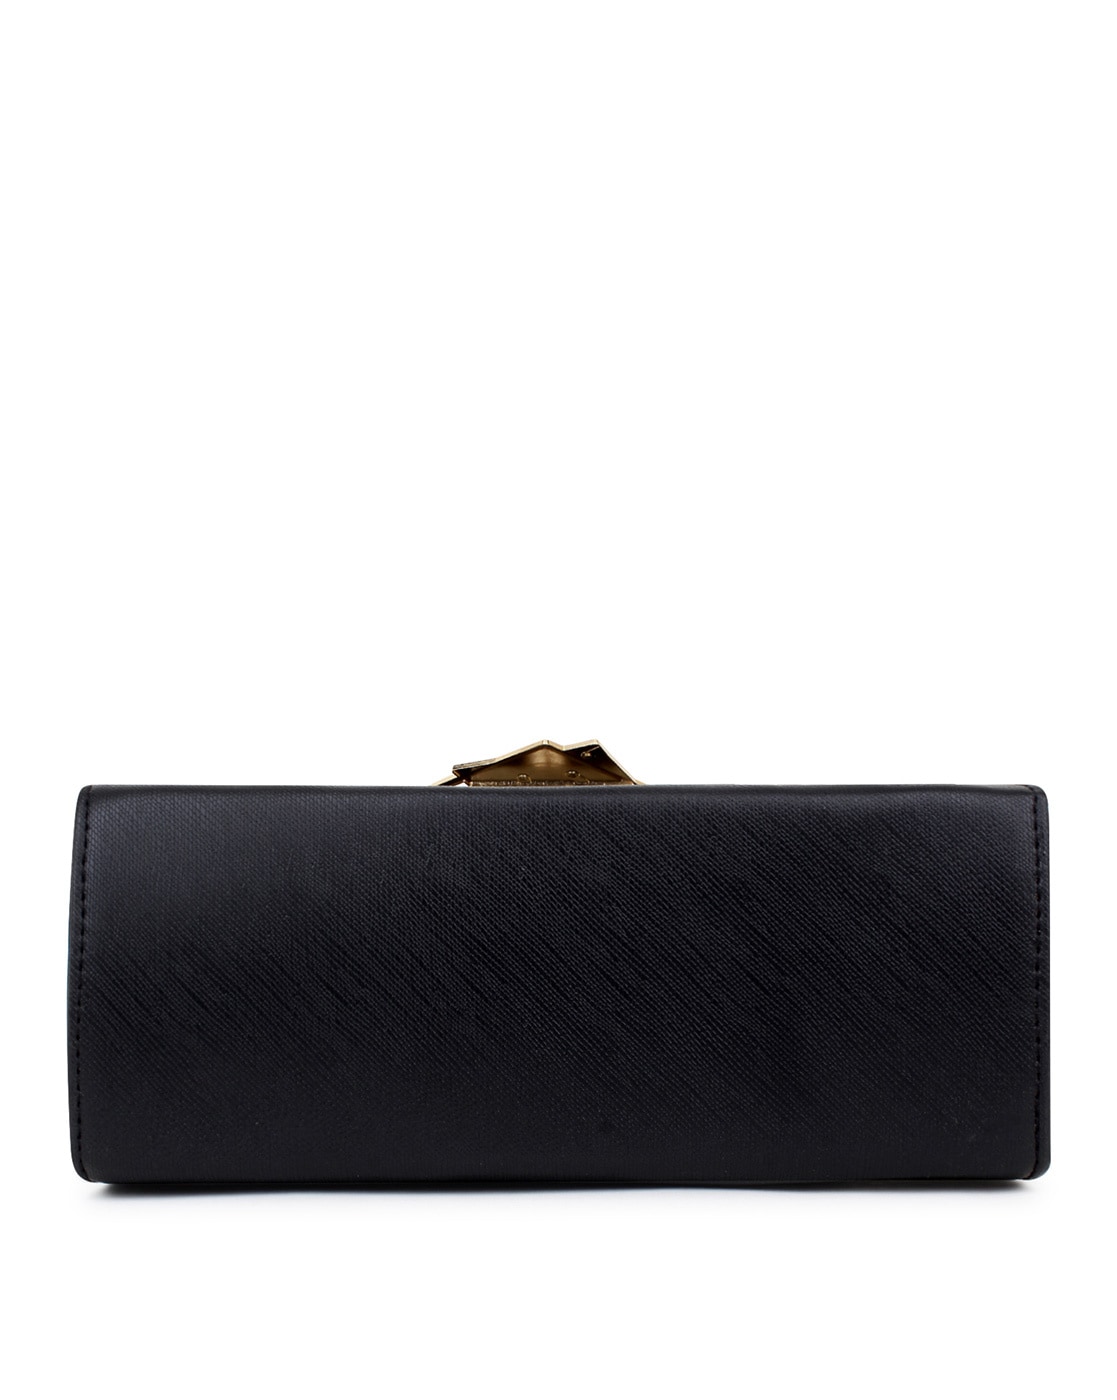 Vintage Black Leather Perlina New York Flap Over Shoulder Handbag Purse -  Etsy